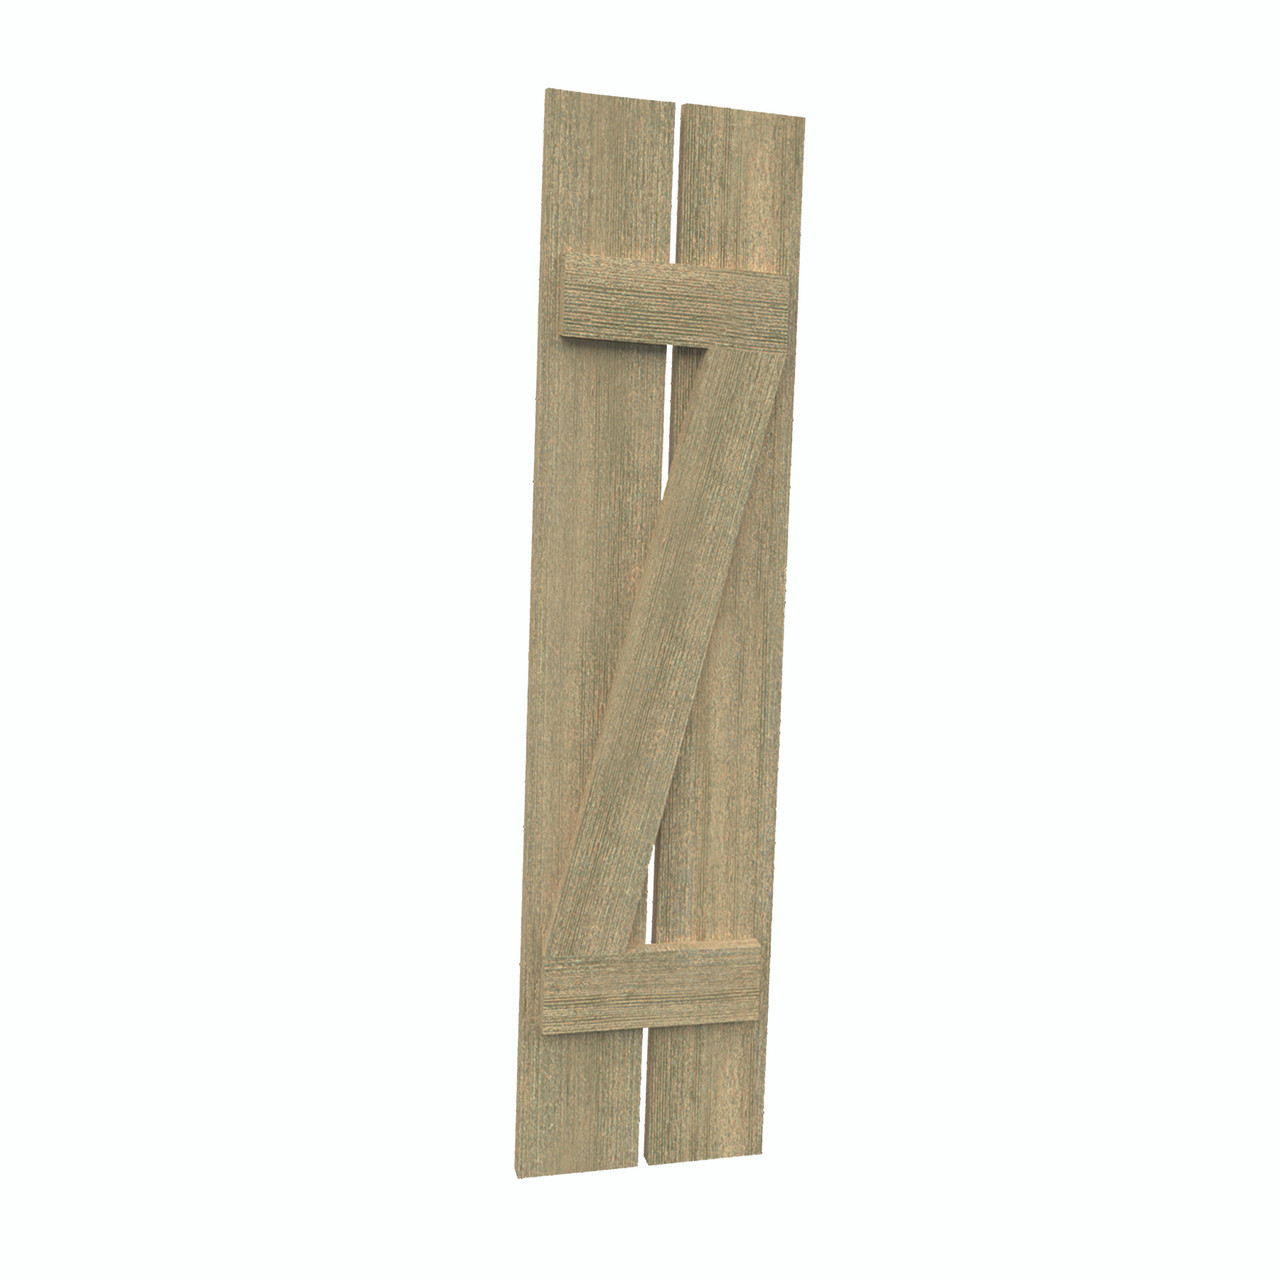 12 inch by 51 inch Plank Shutter with 2-Plank, Z-Batten